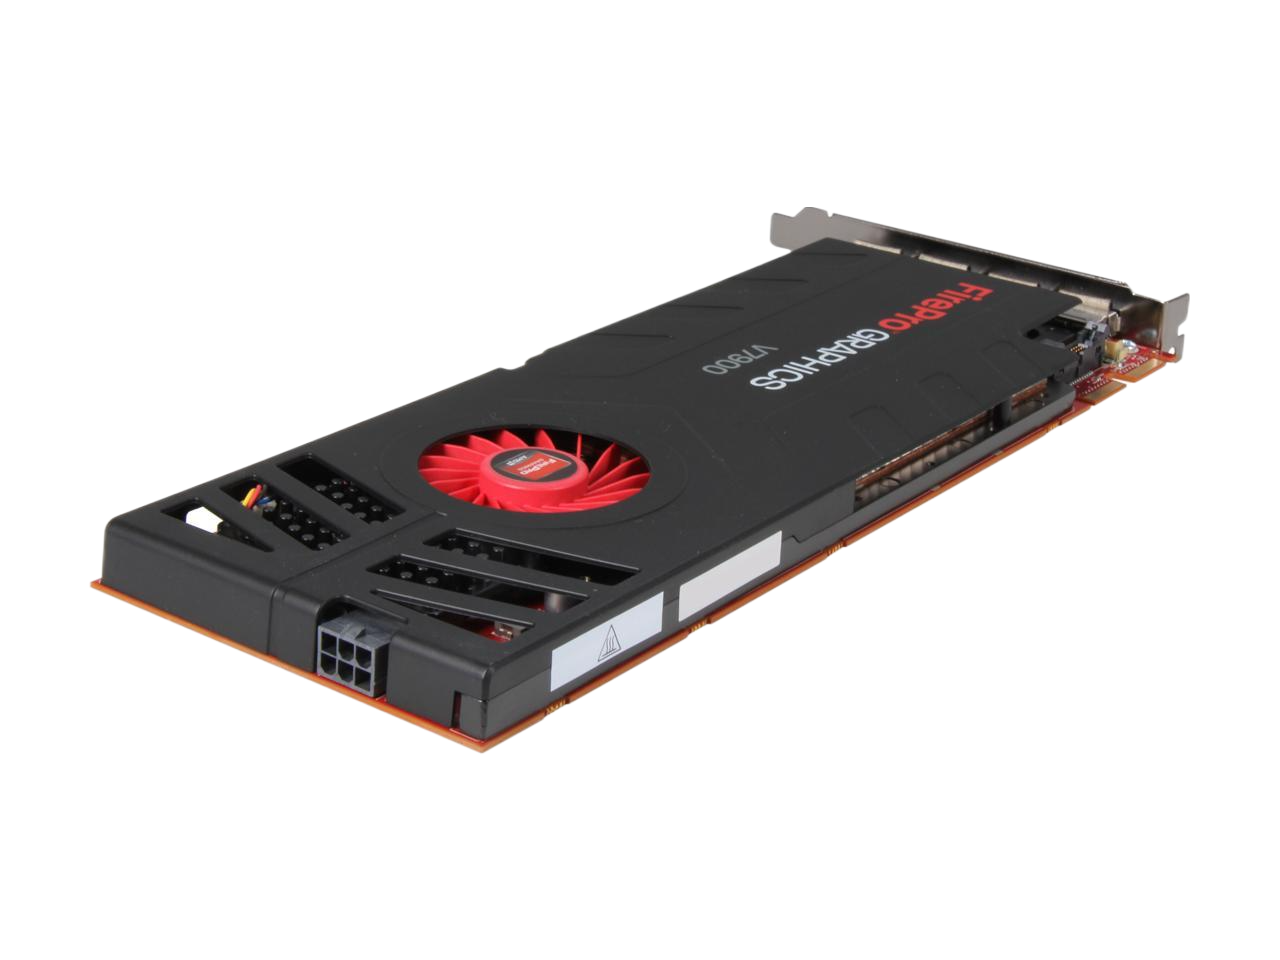 AMD FirePro V7900 2GB HF Dell Graphics Card 100-505693